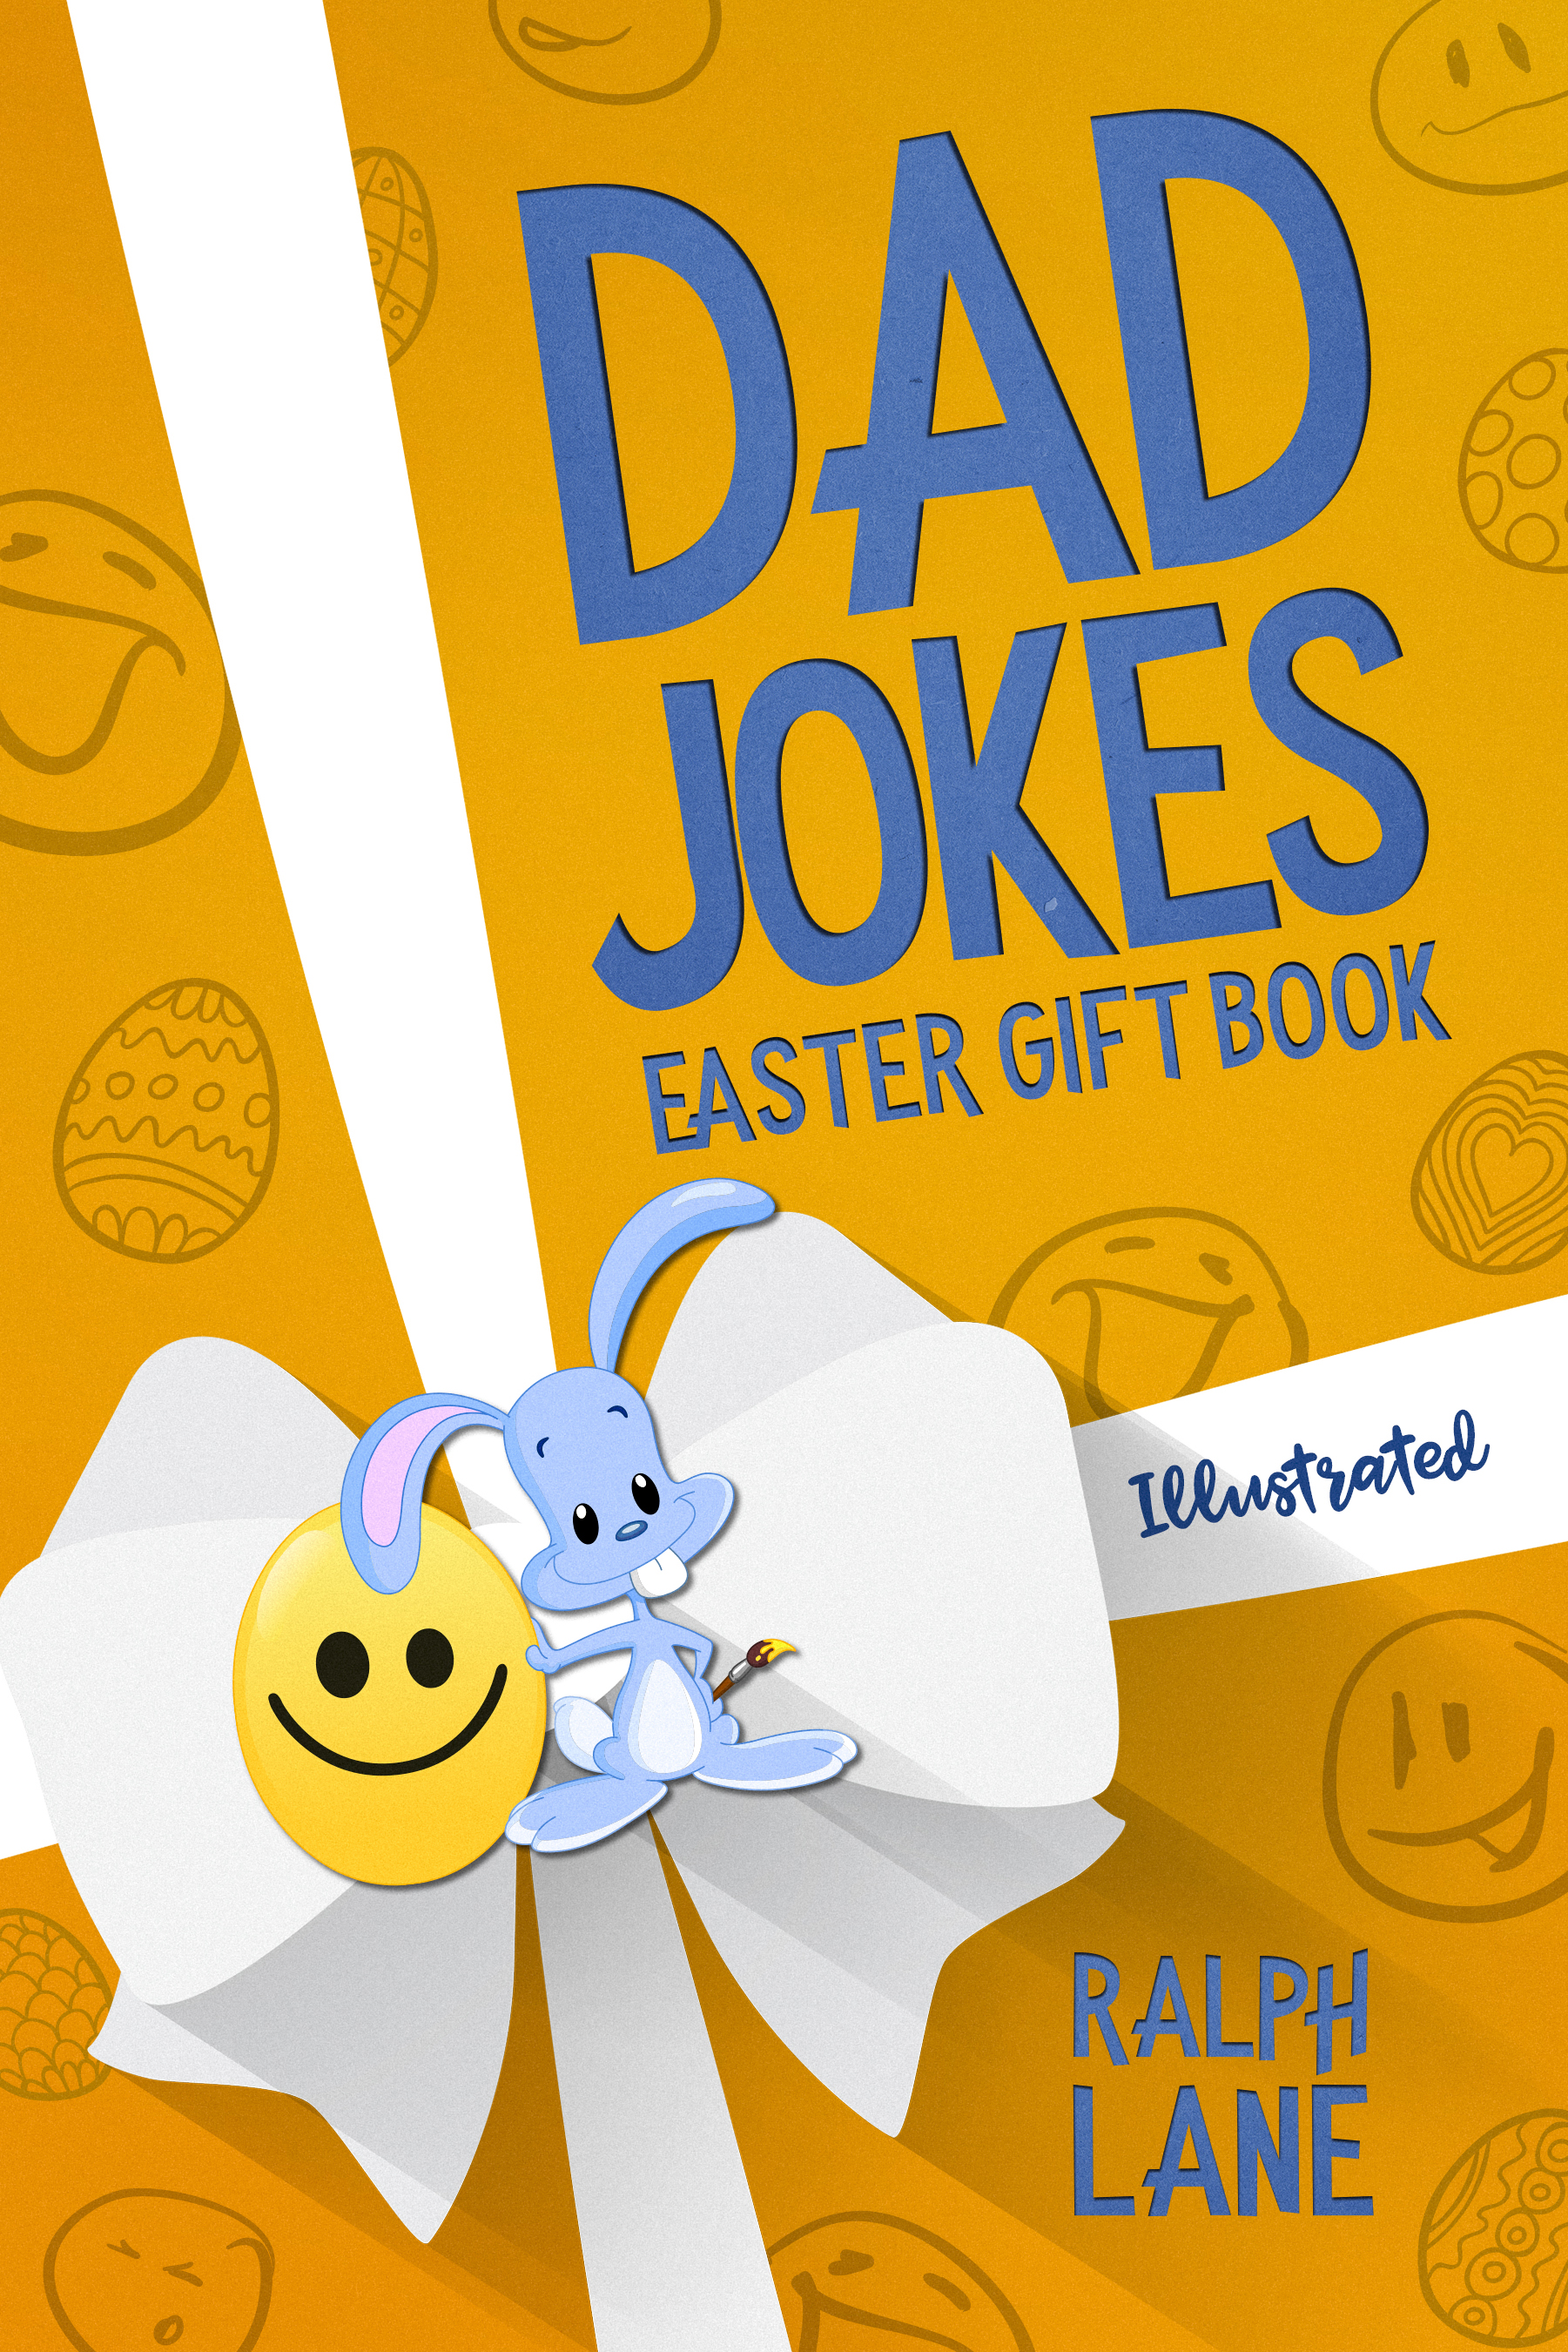 FREE: Dad Jokes Easter Gift Book by Ralph Lane